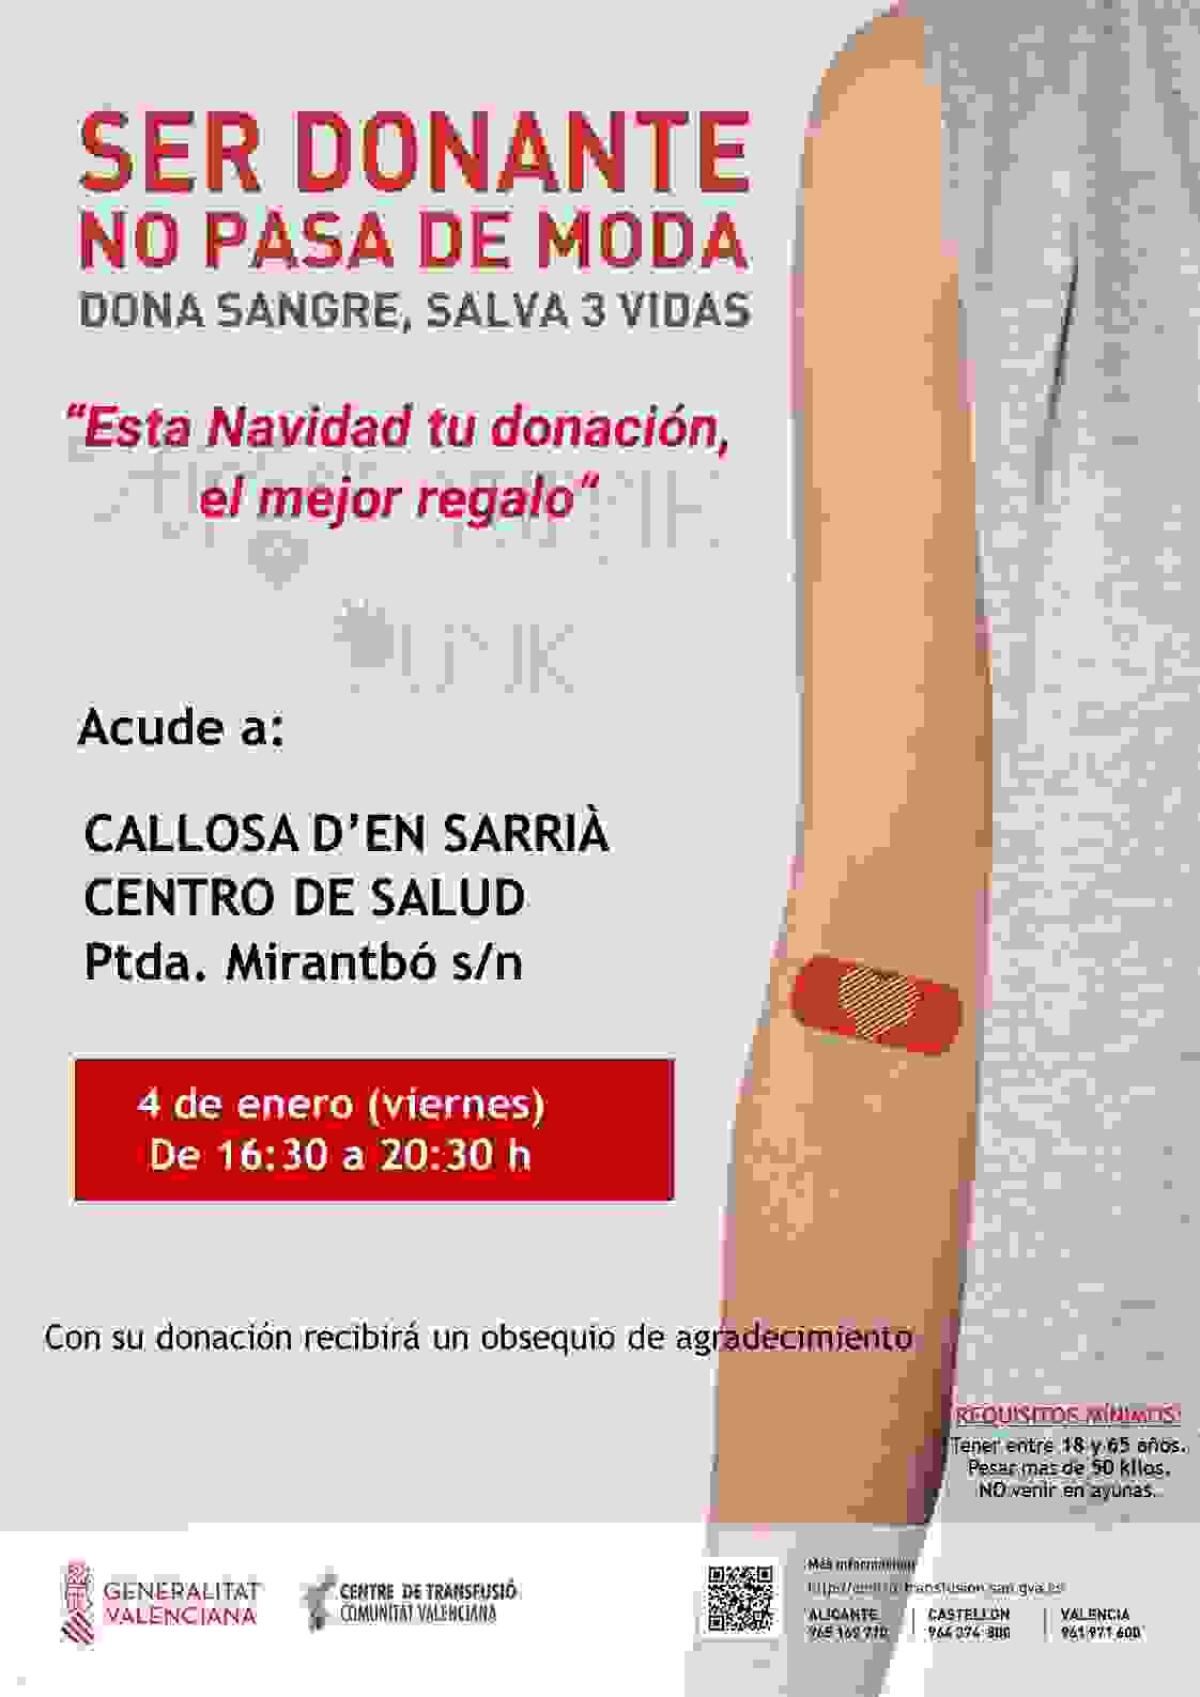 Donación de Sangre el próximo 4 de enero en el Centro de Salud de Callosa d’en Sarrià